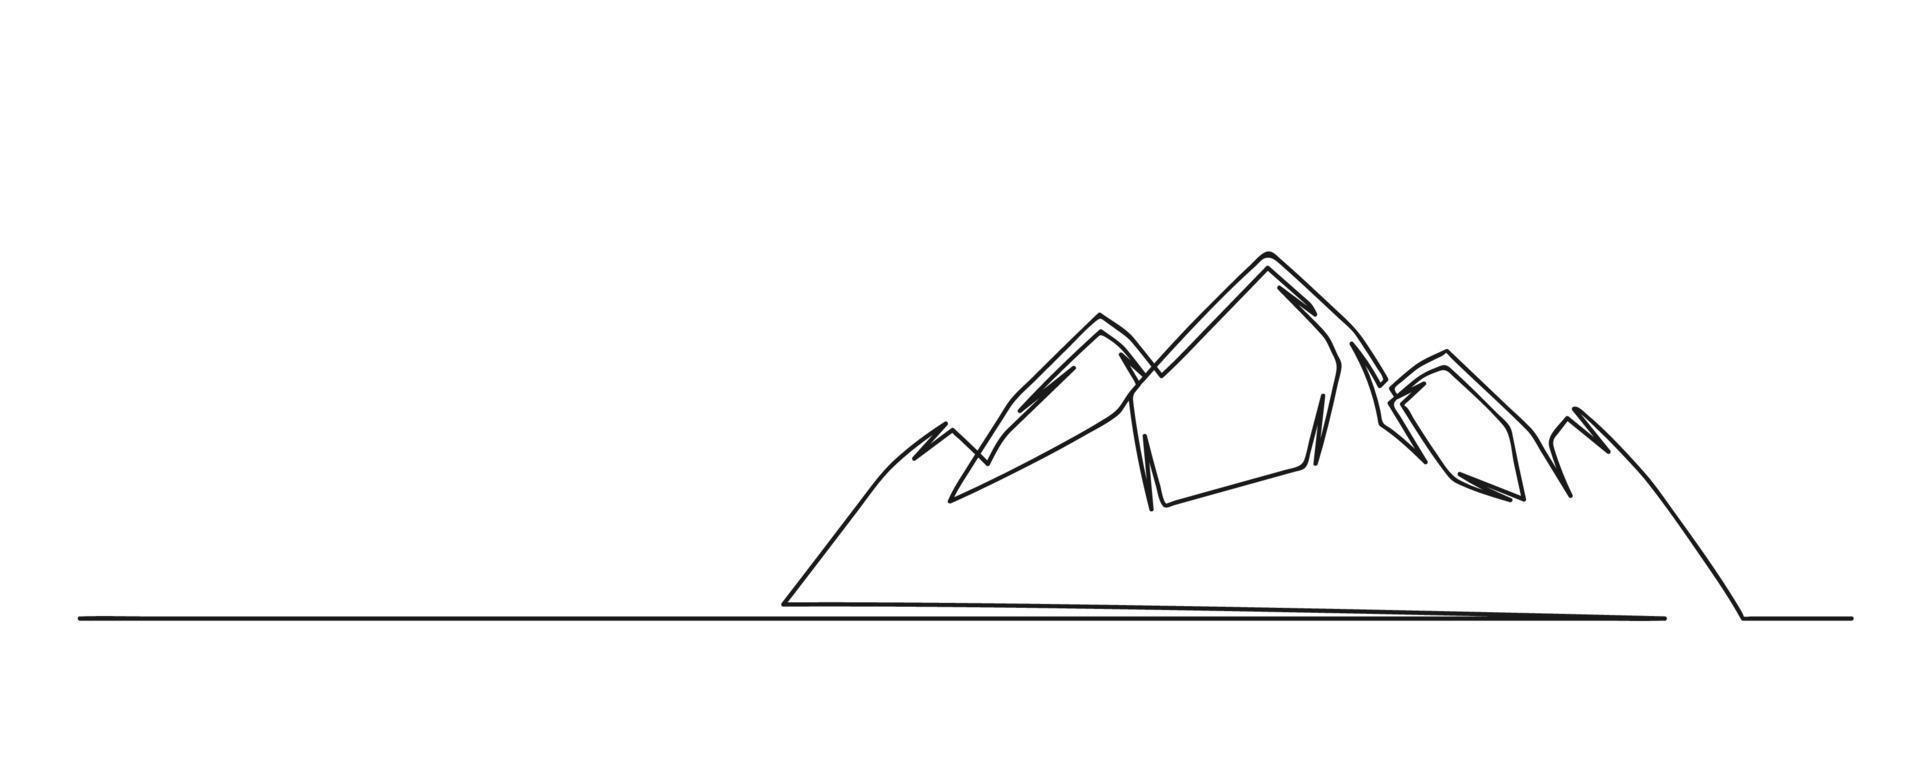 kontinuerlig en rad ritning av bergskullar vektor